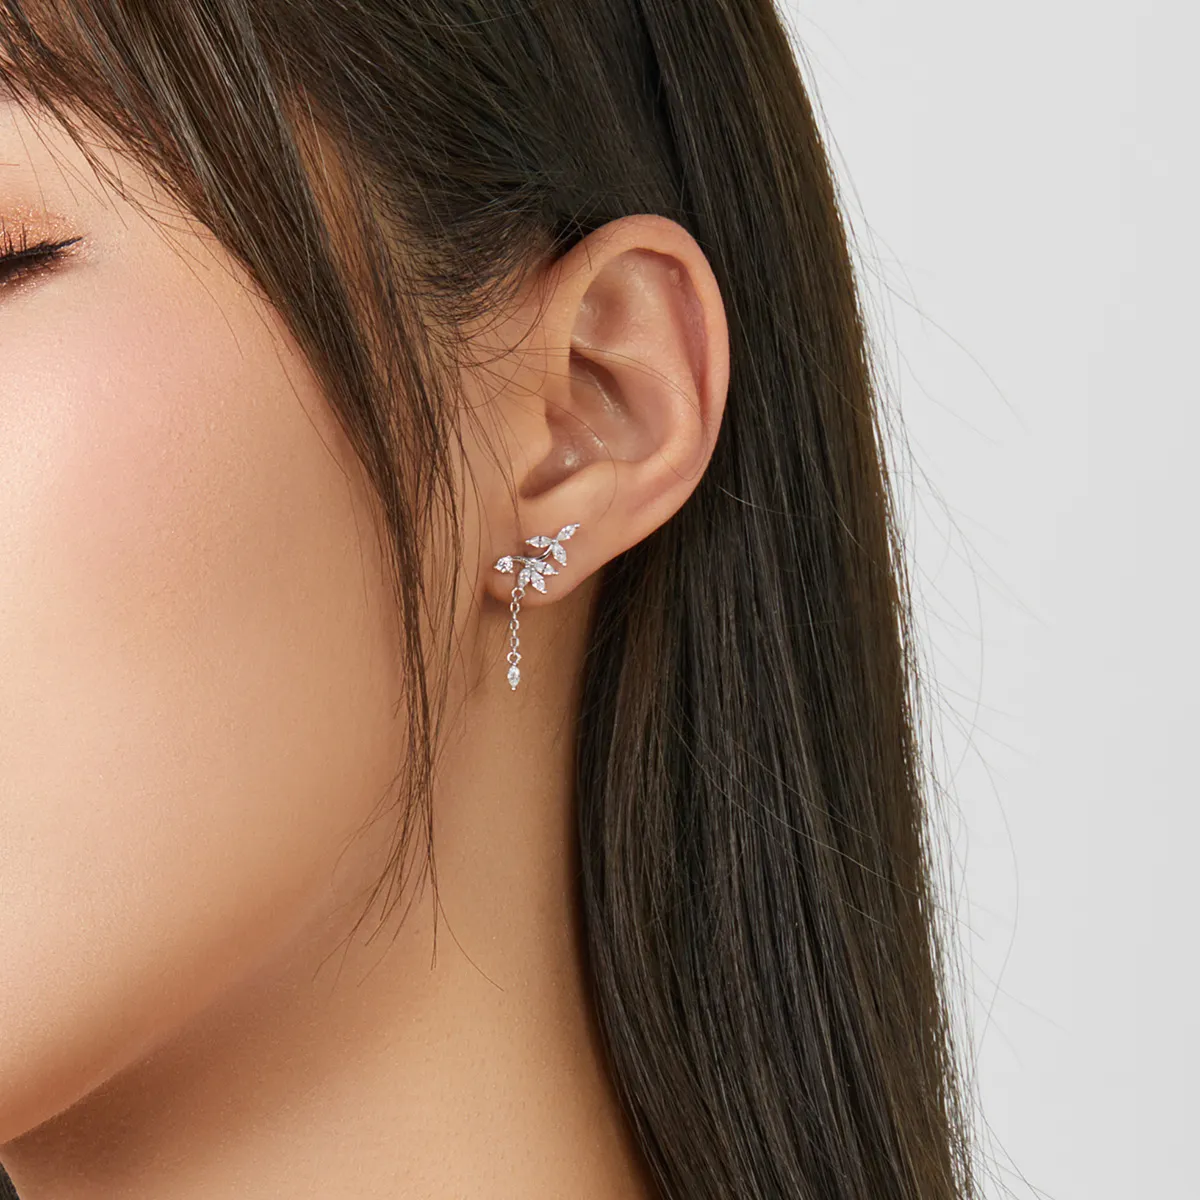 Pandora Style Silver Shiny Flower Dangle Earrings - BSE350